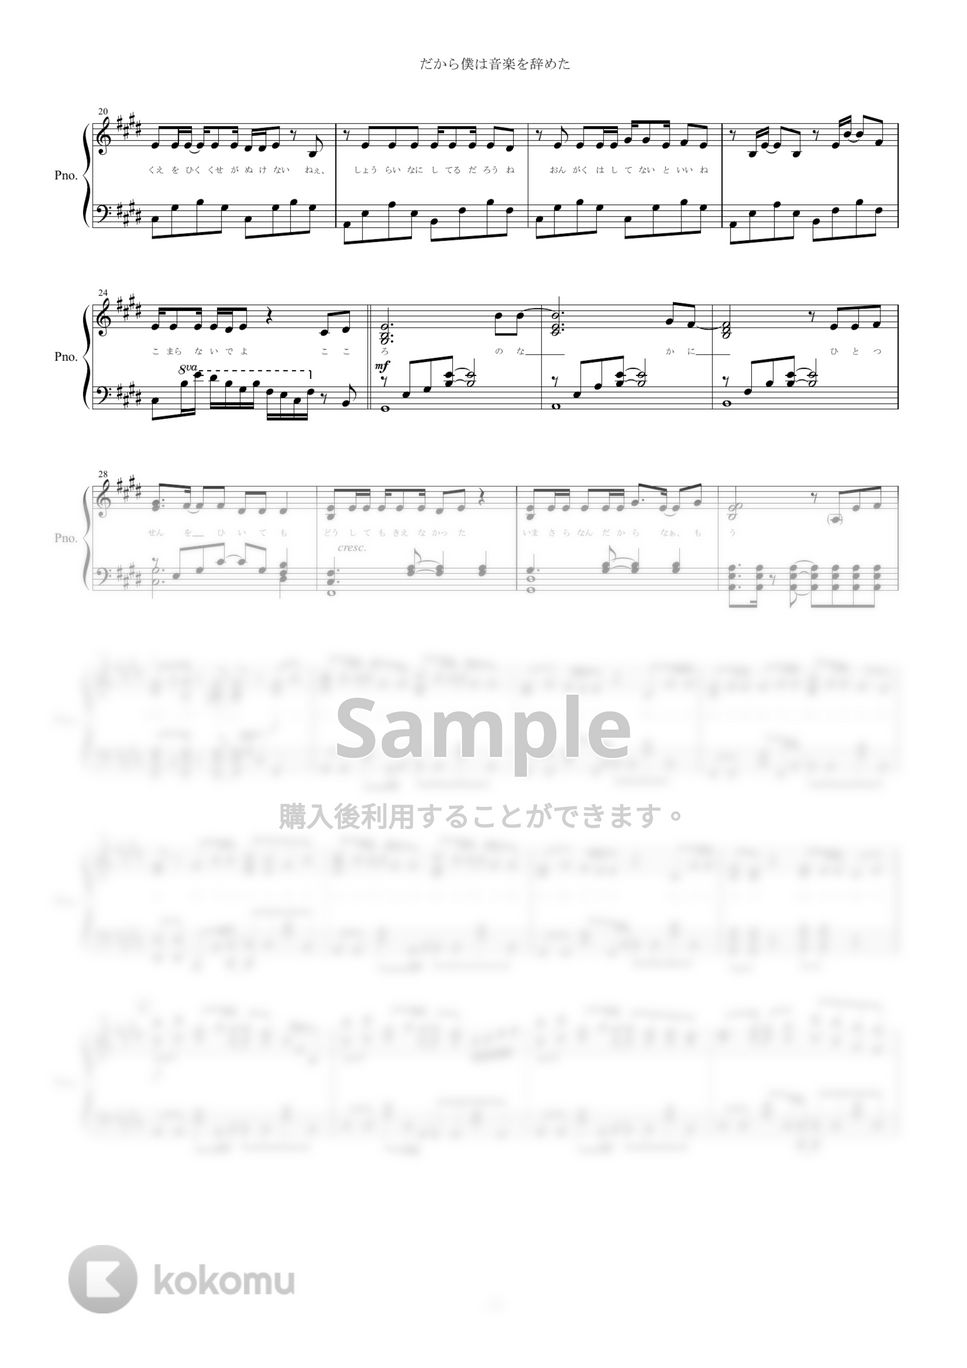 ヨルシカ - だから僕は音楽を辞めた (ピアノ楽譜/全６ページ/中級) by yoshi